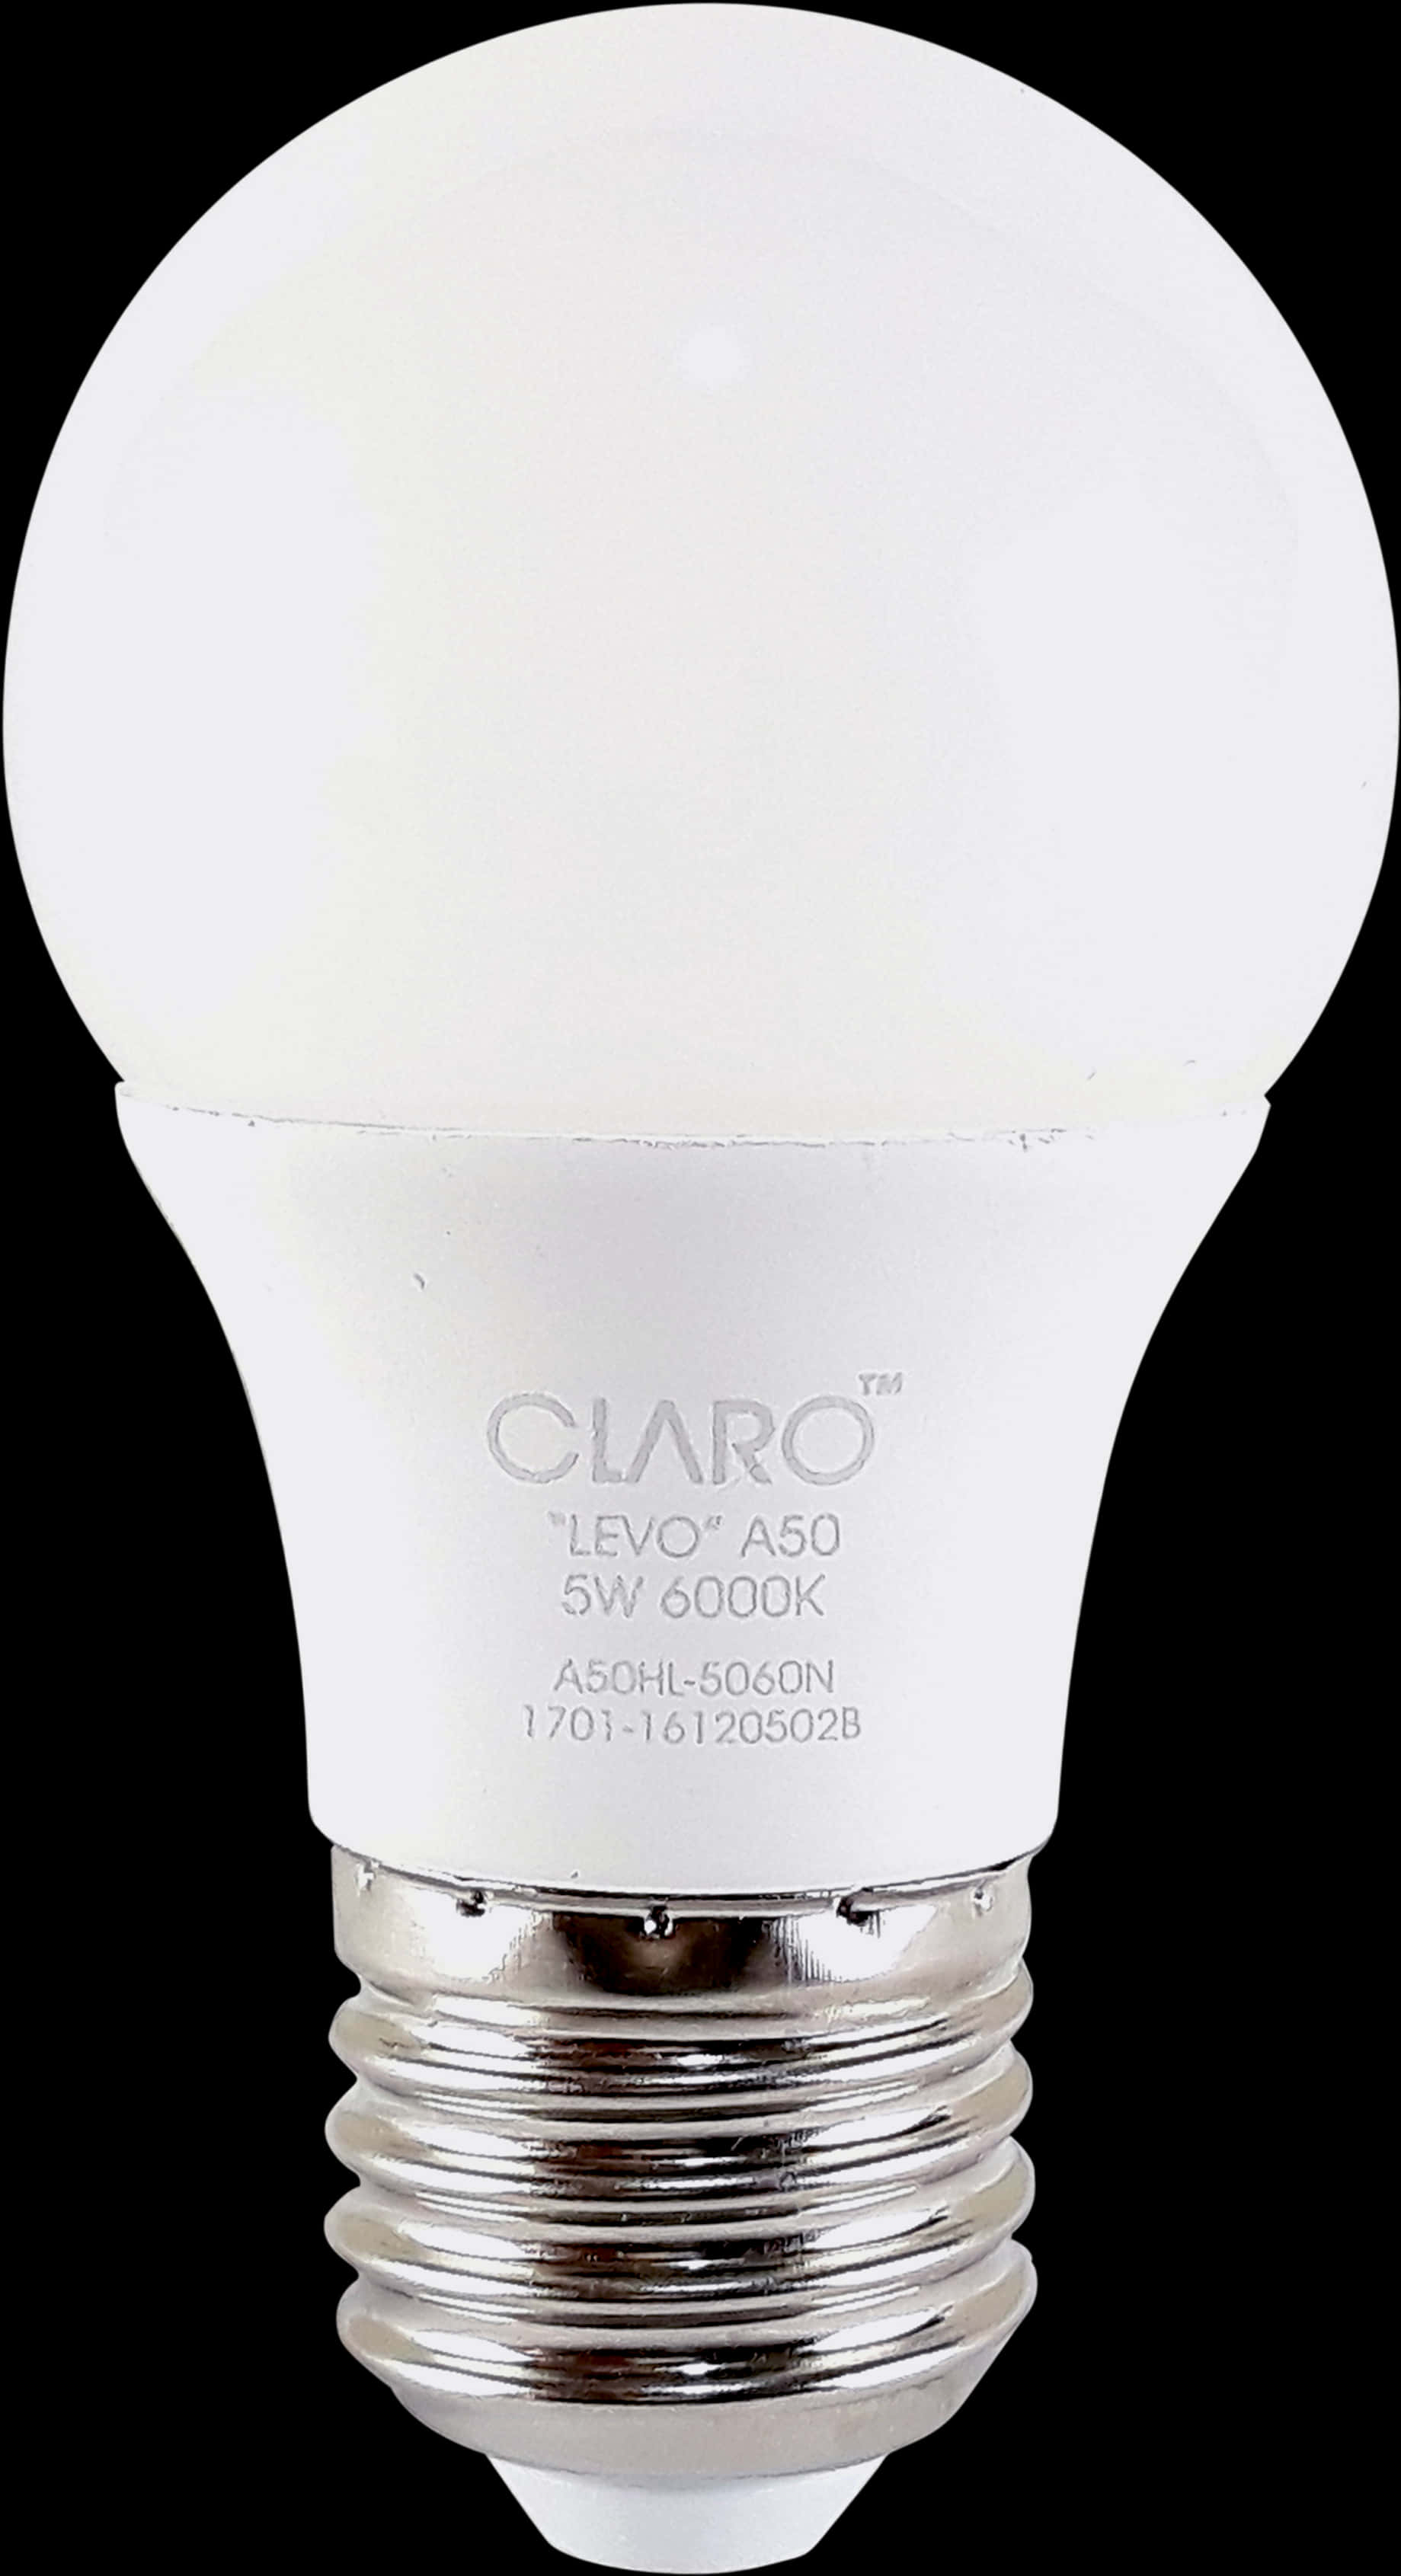 Eufy Smart Led Bulb, Hd Png Download